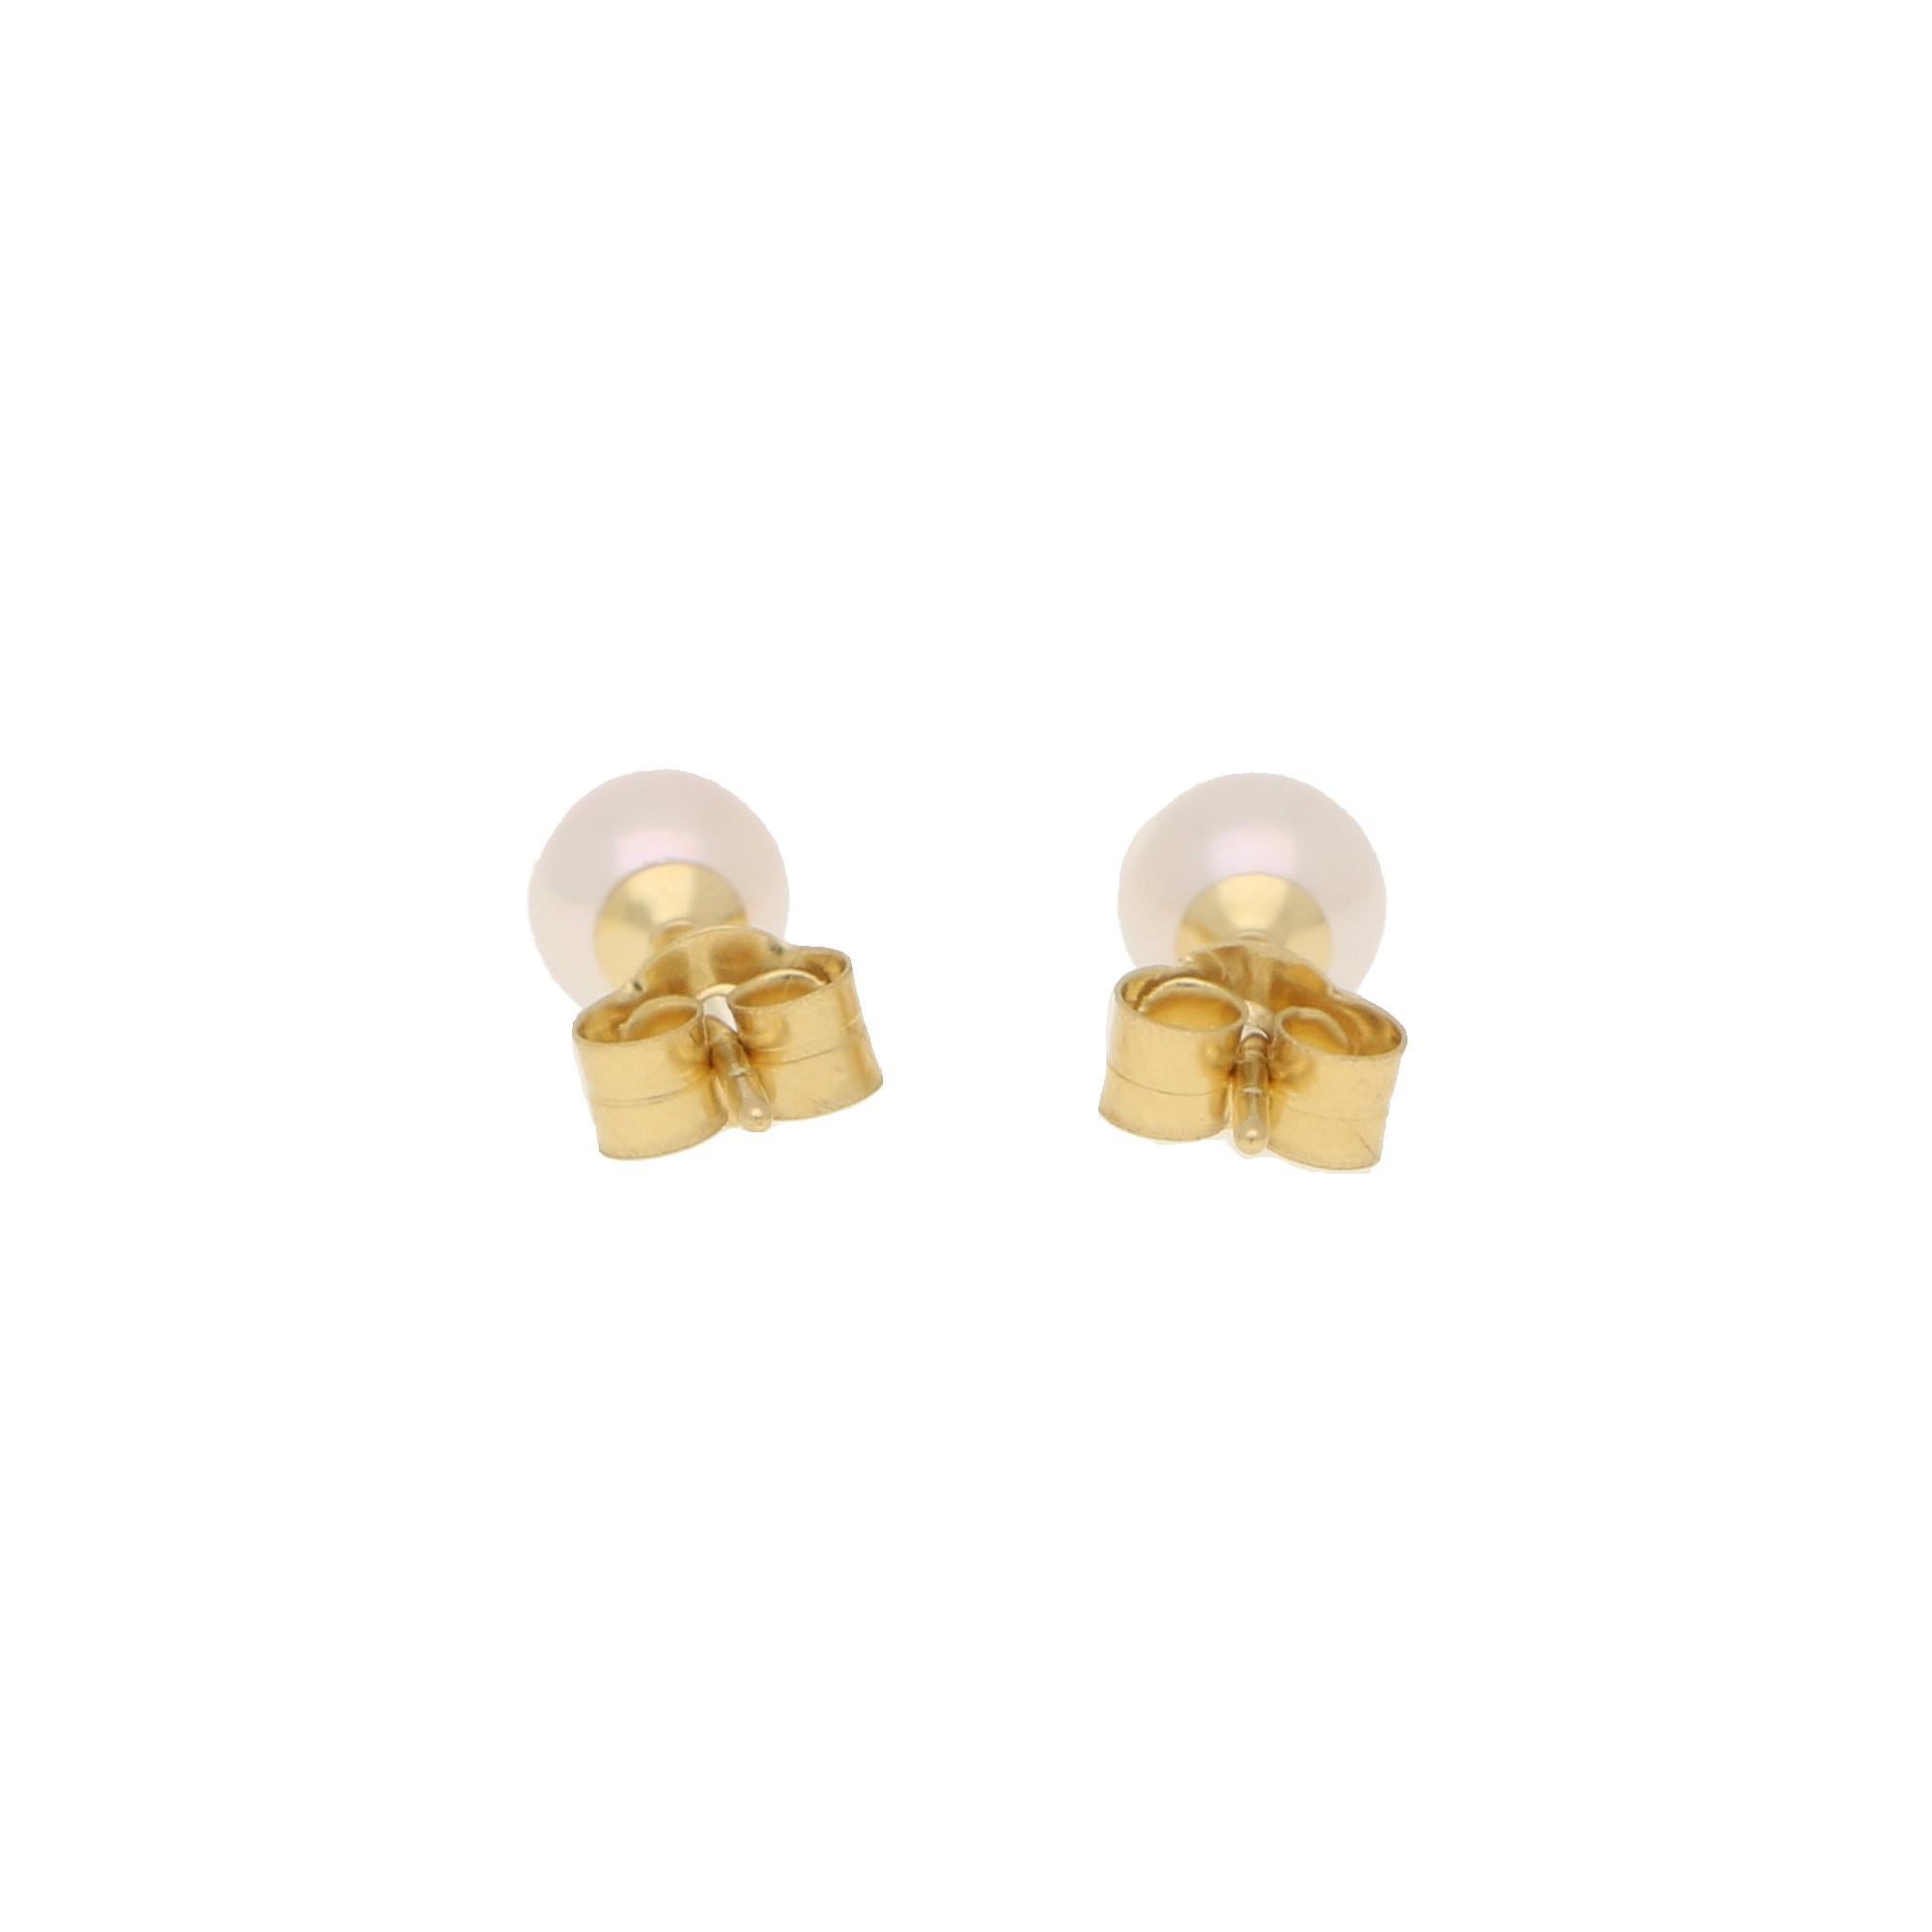 5.5 mm earrings